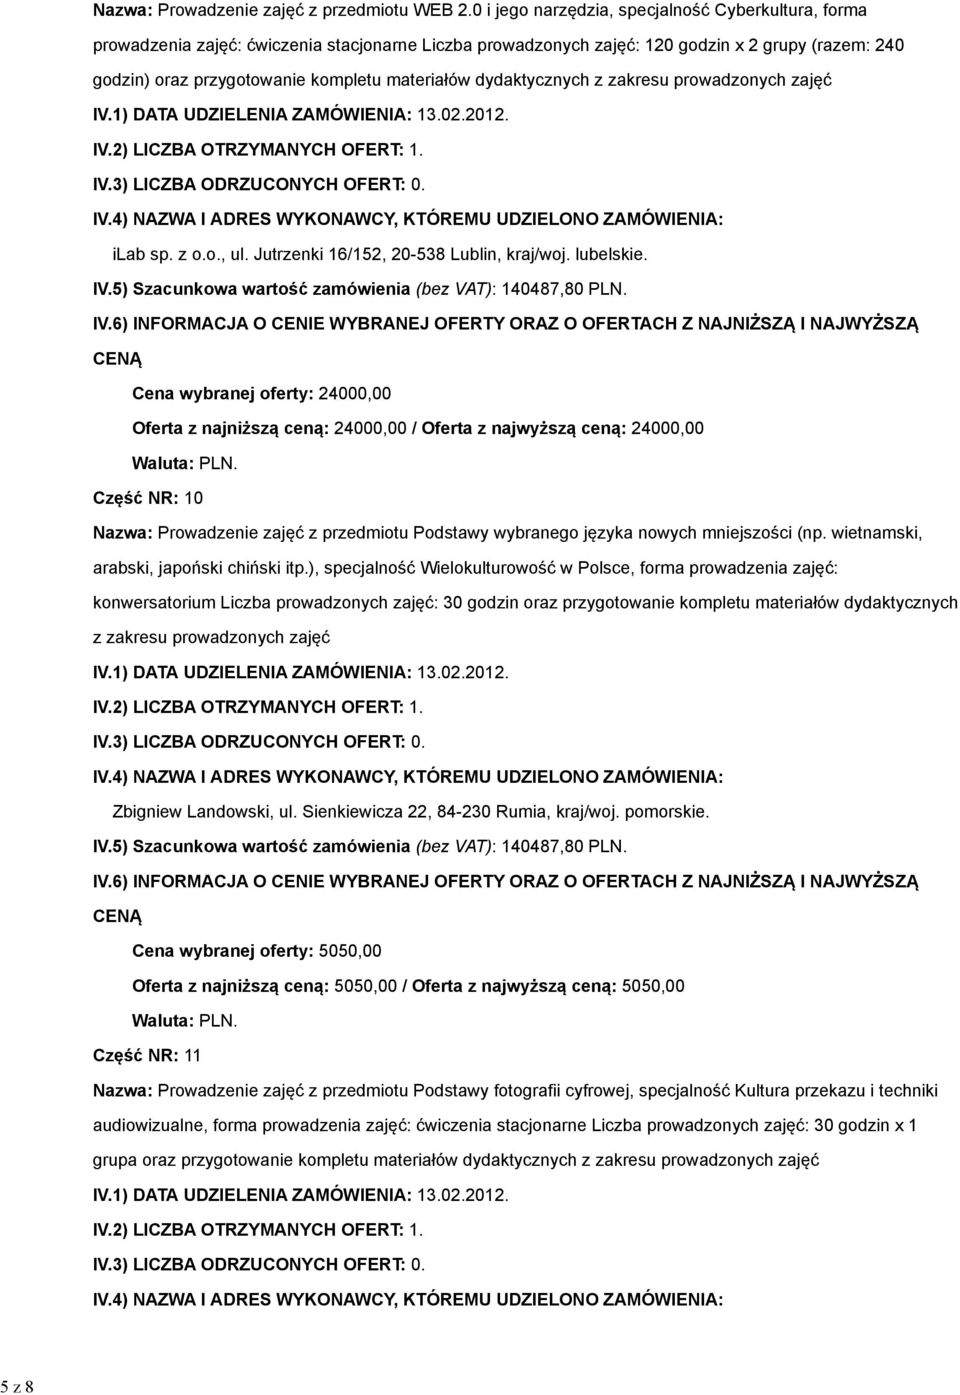 zakresu ilab sp. z o.o., ul. Jutrzenki 16/152, 20-538 Lublin, kraj/woj. lubelskie.